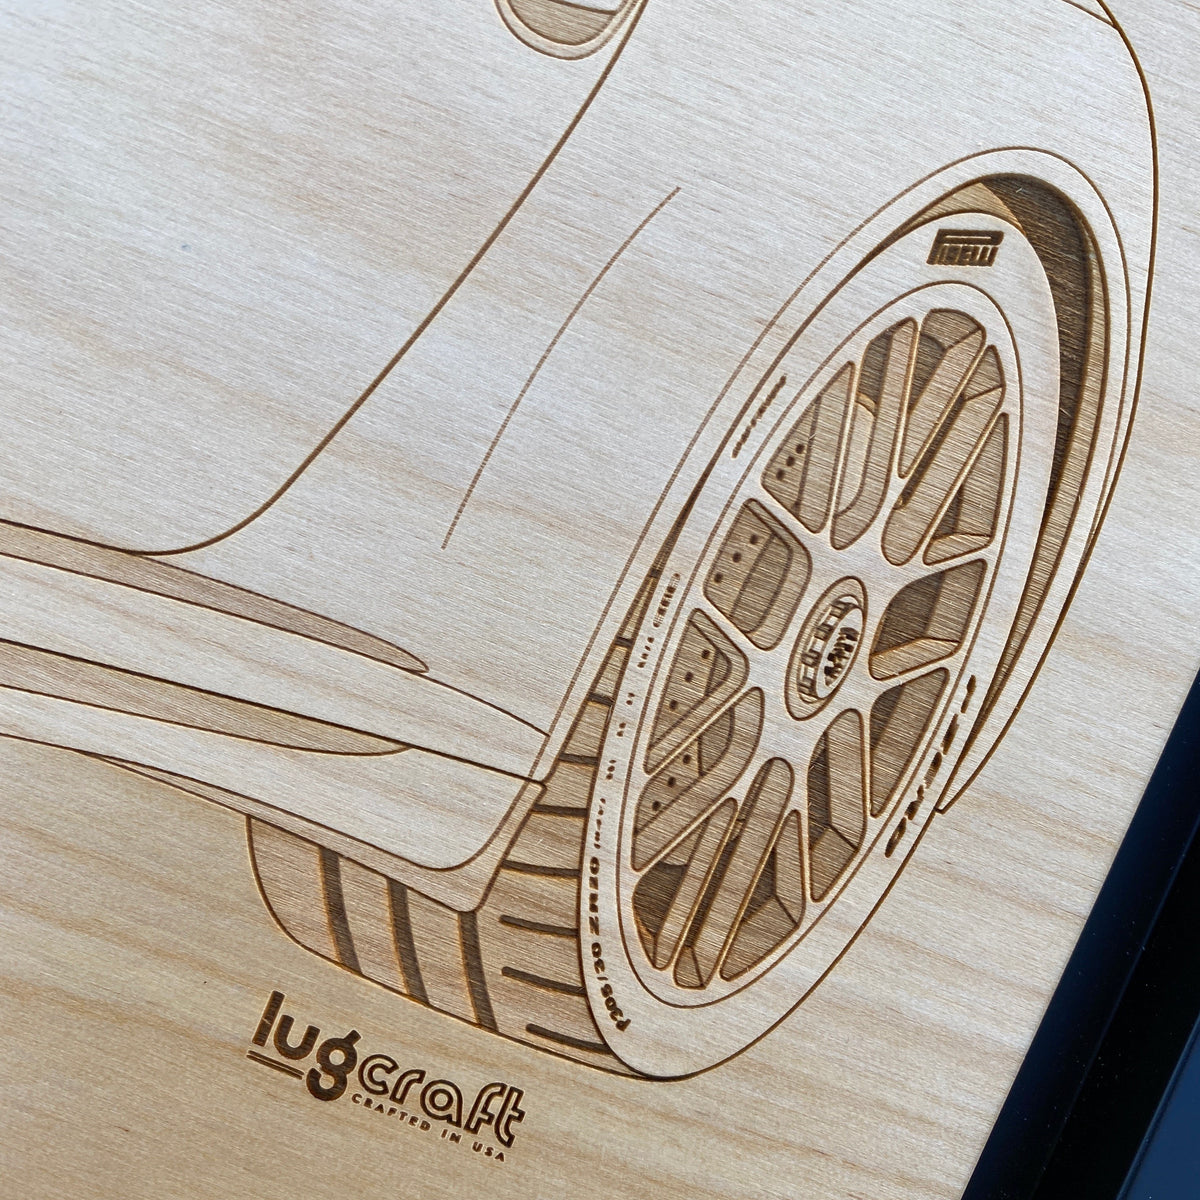 Porsche 991 GTS Cabriolet Framed Wood Engraved Artwork